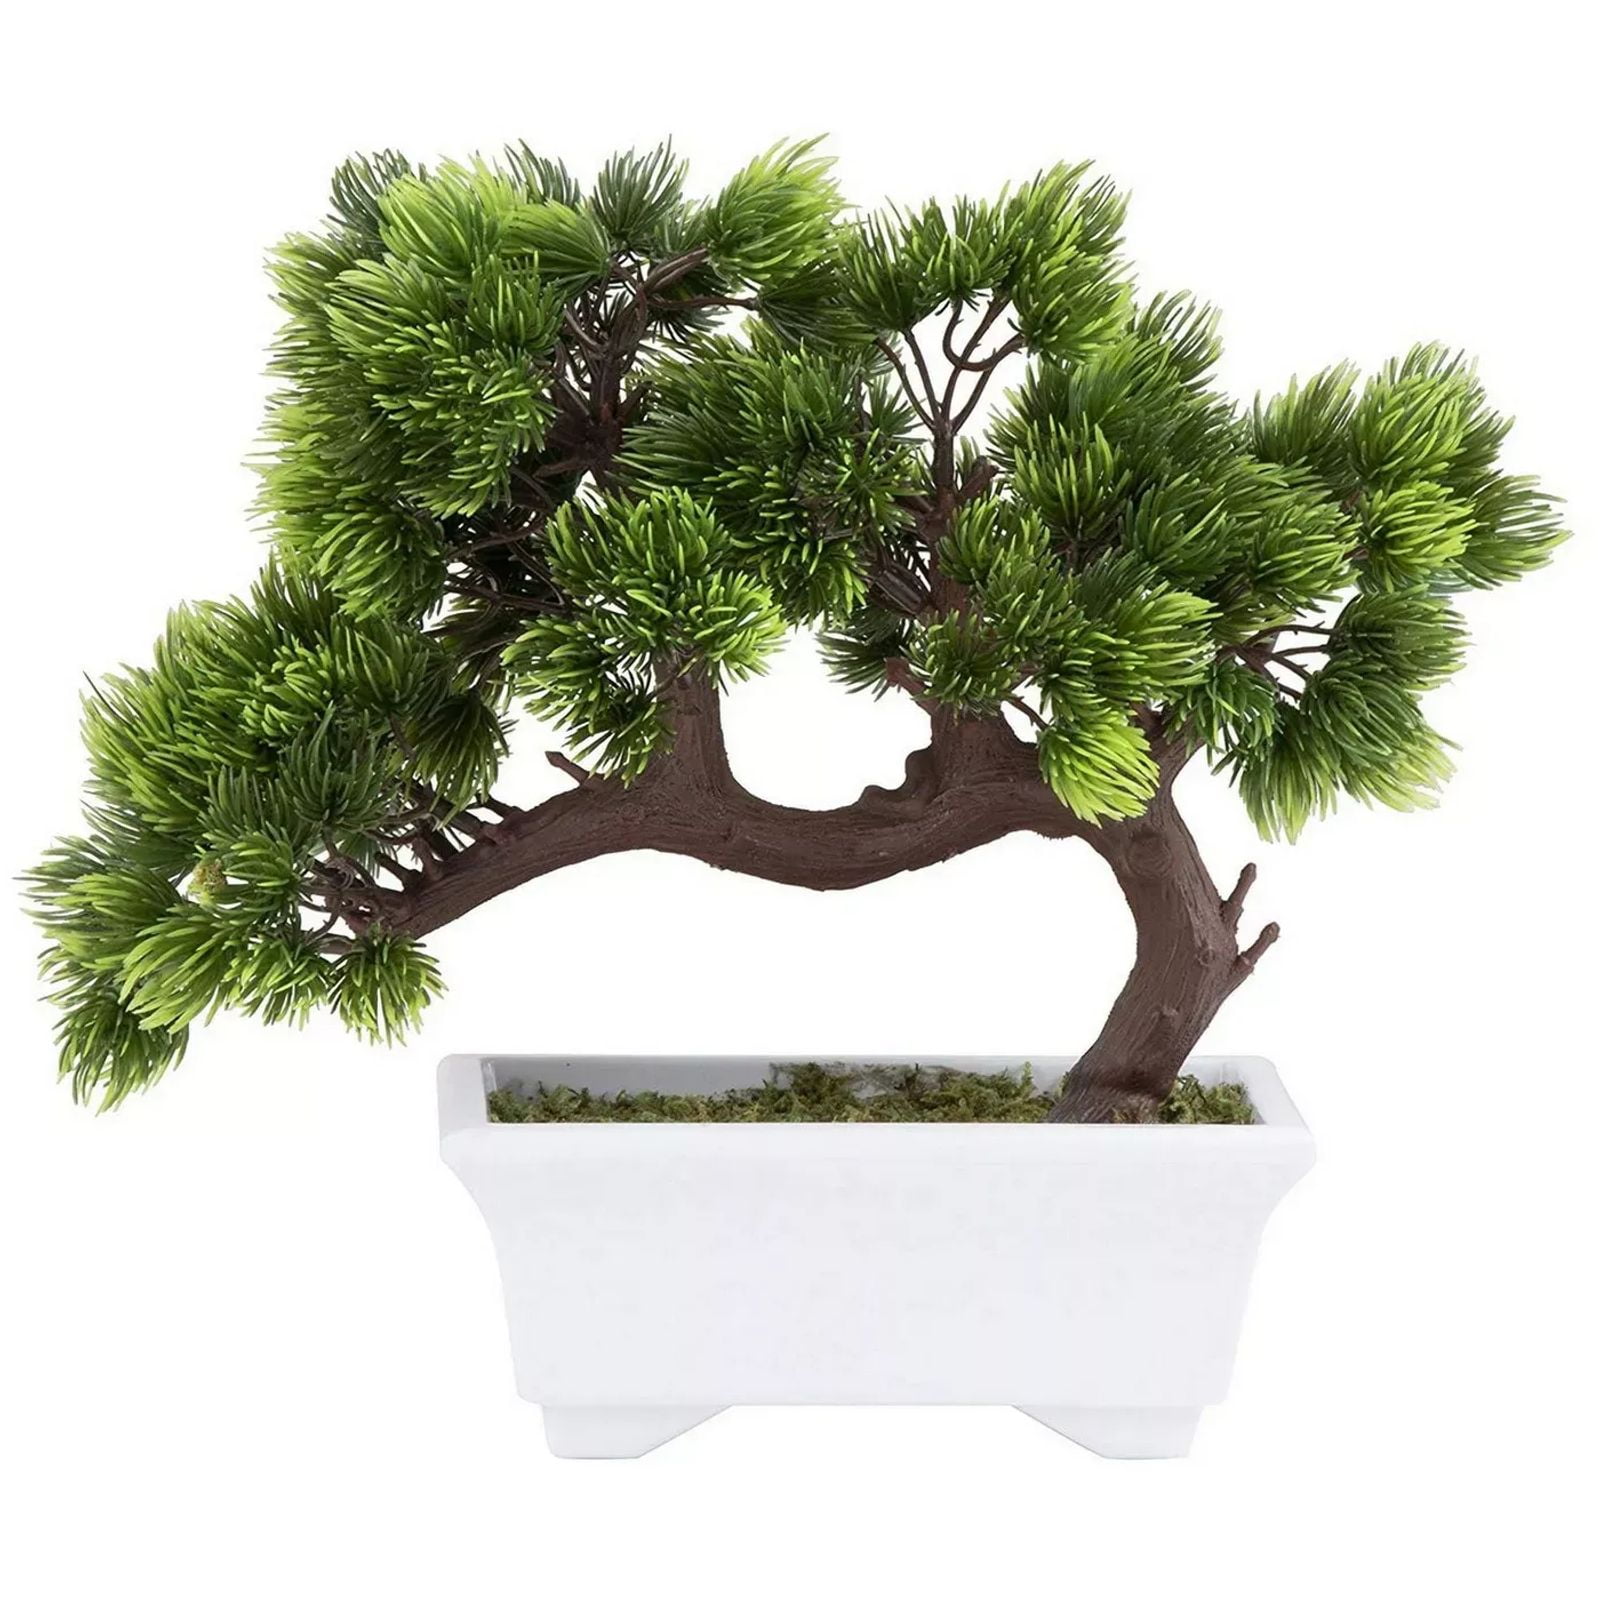 Details about   Artificial Plant Decorative Pine Plastic Artificial Bonsai for Home Decor Charm 